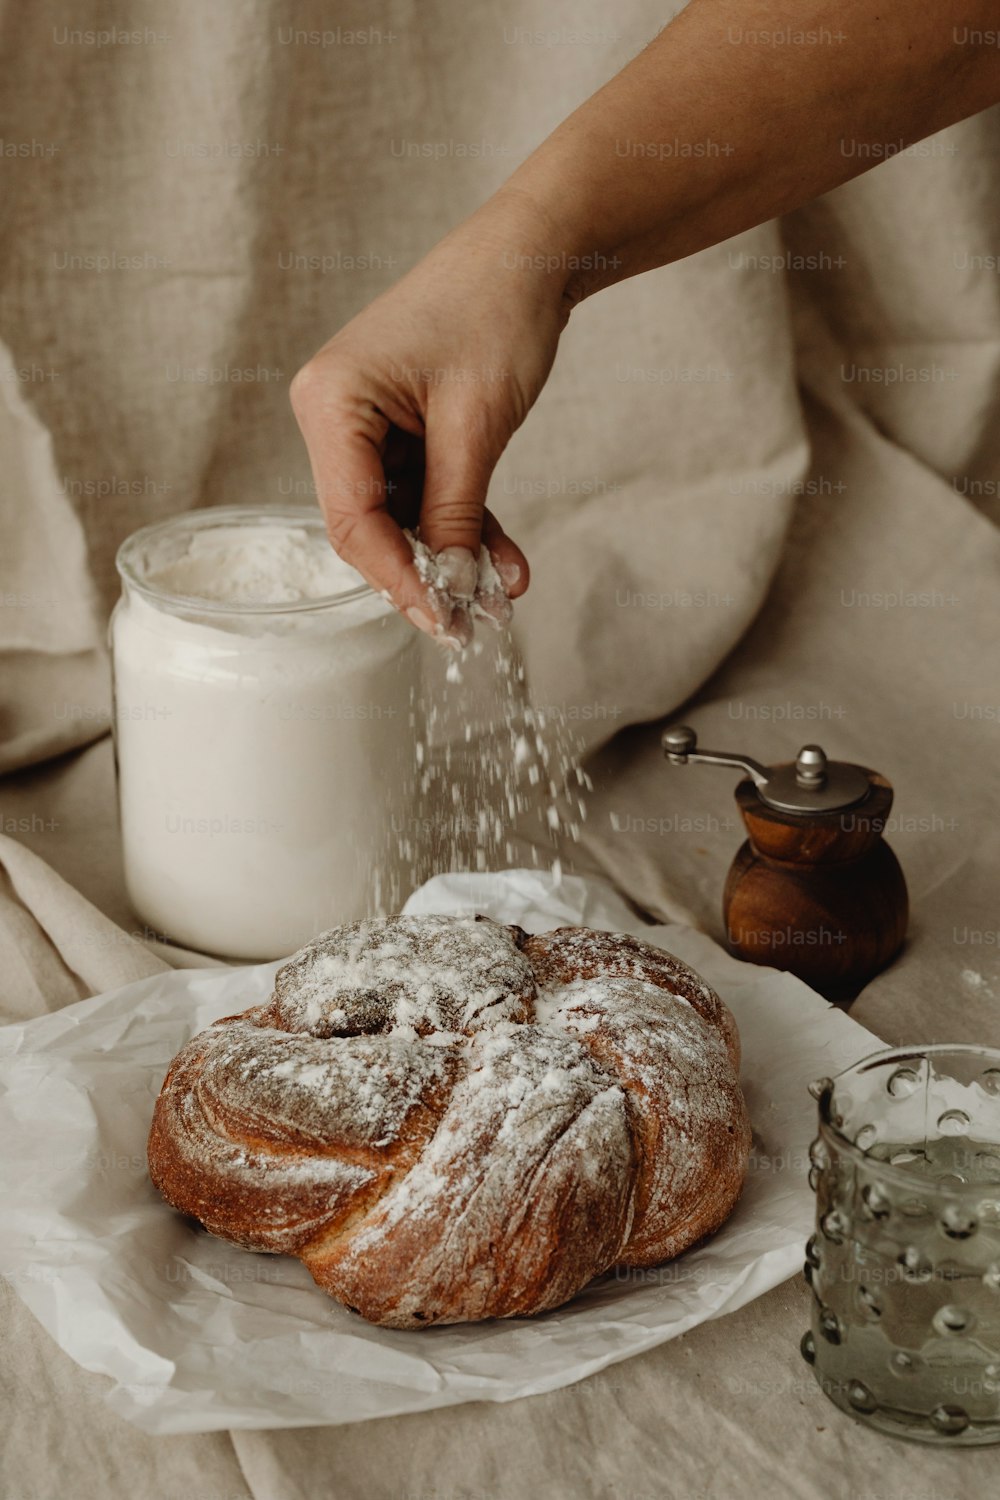 una persona espolvoreando azúcar en un bagel